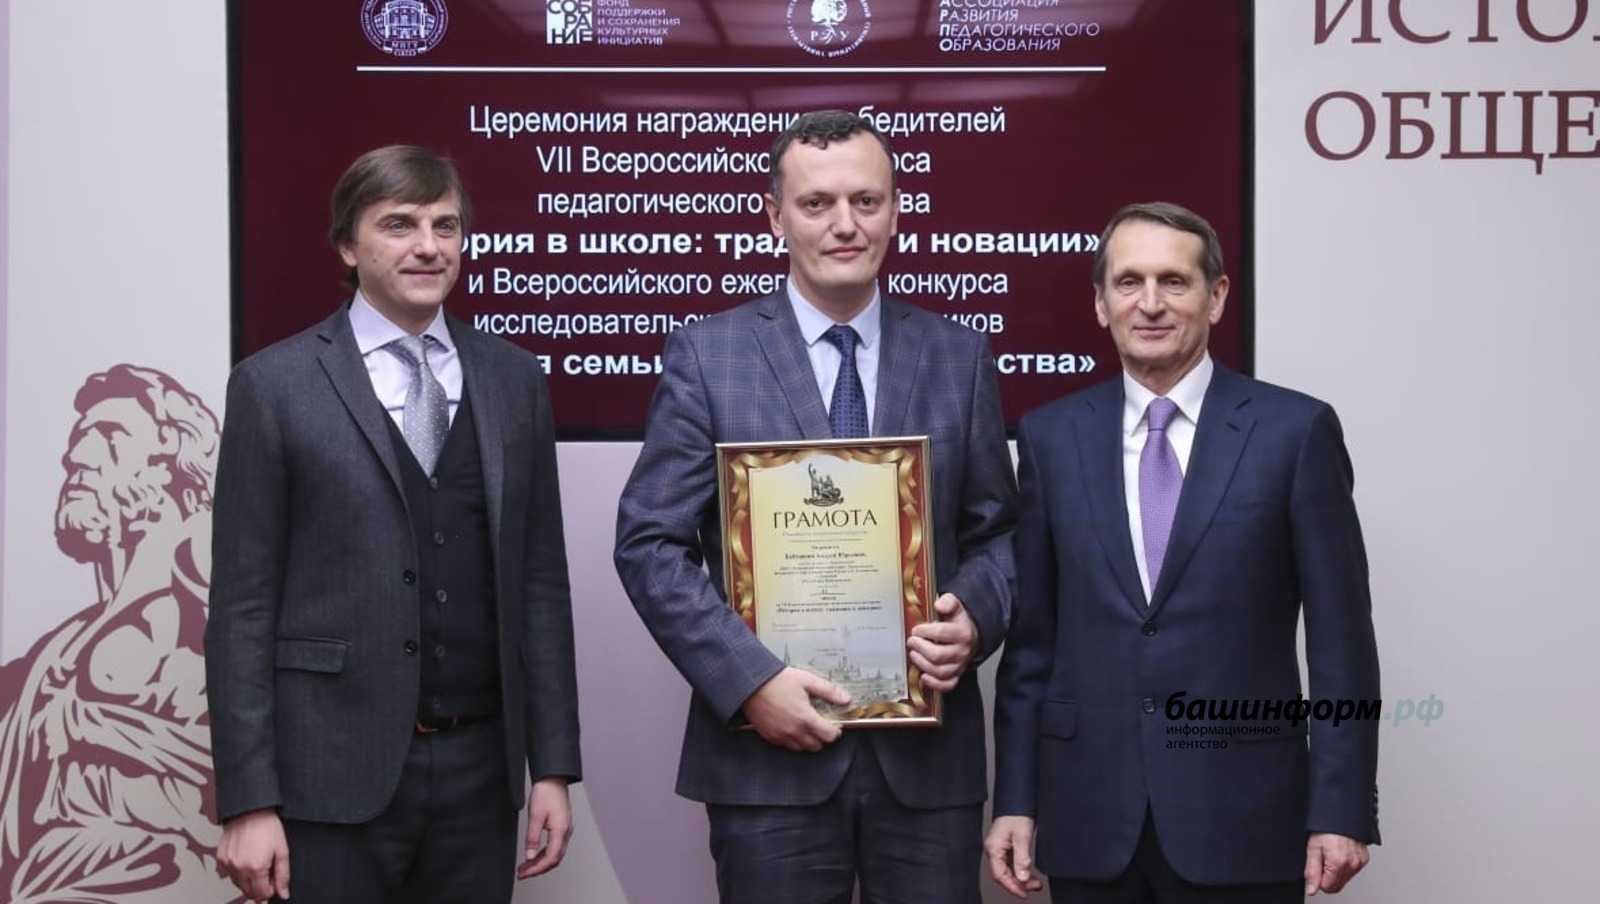 Учитель истории из Башкирии стал победителем VII Всероссийского конкурса педагогического мастерств